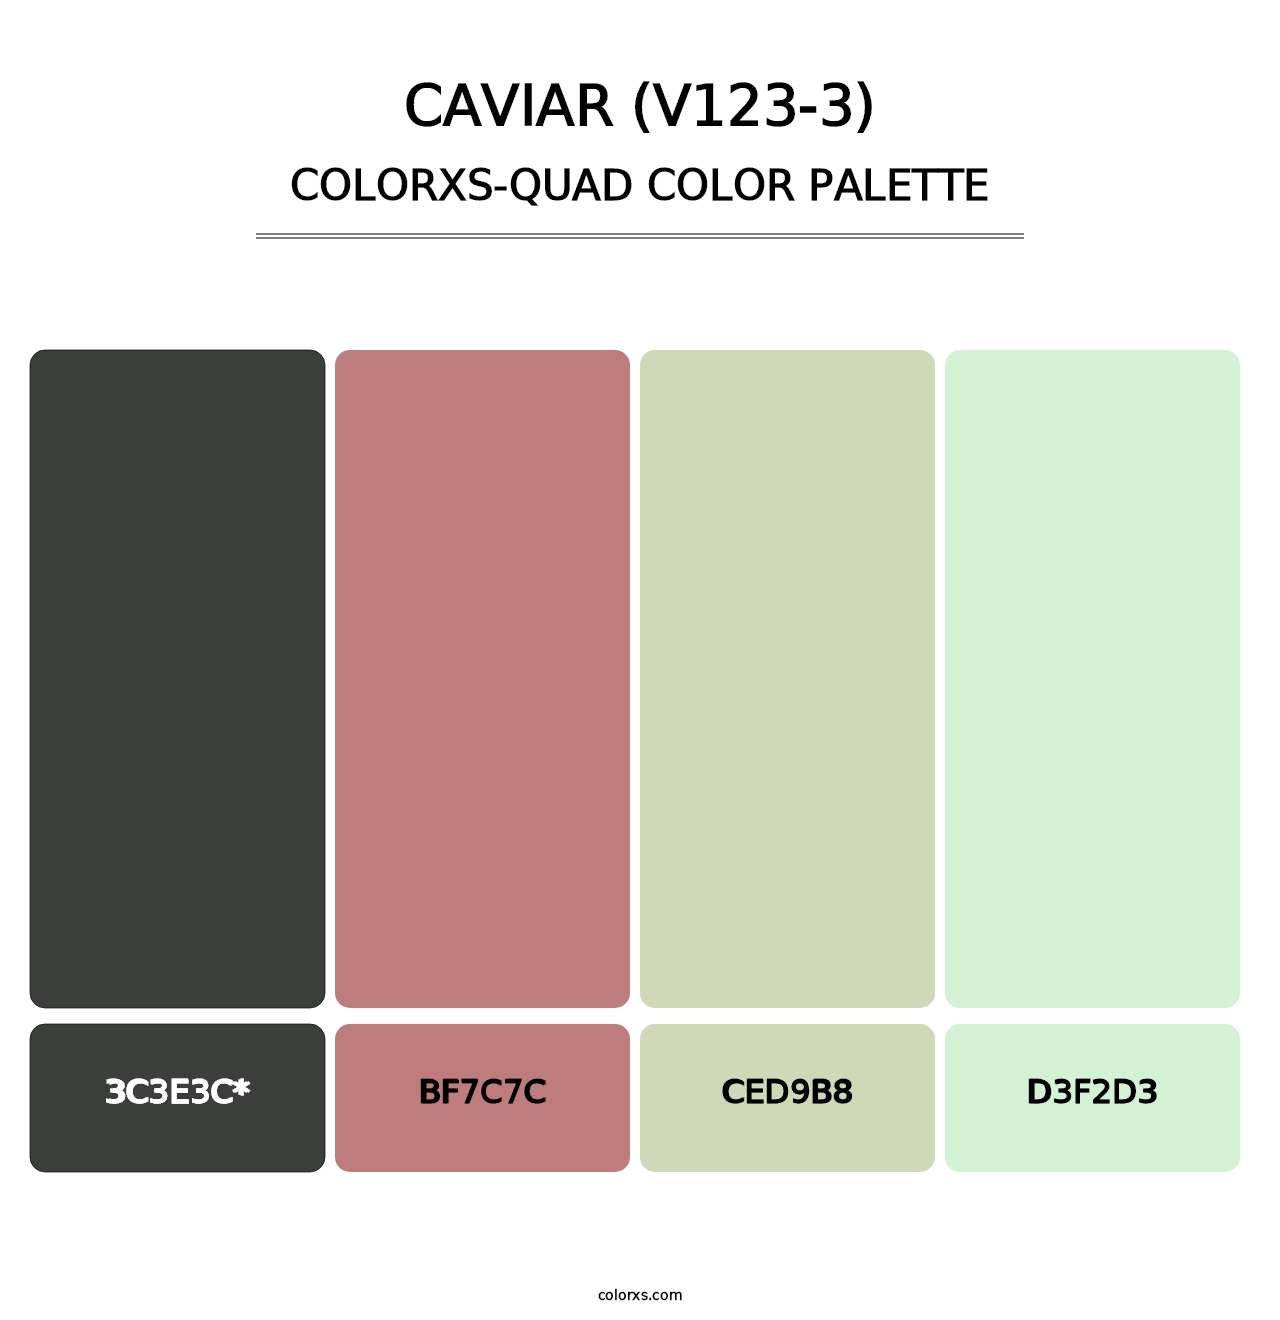 Caviar (V123-3) - Colorxs Quad Palette